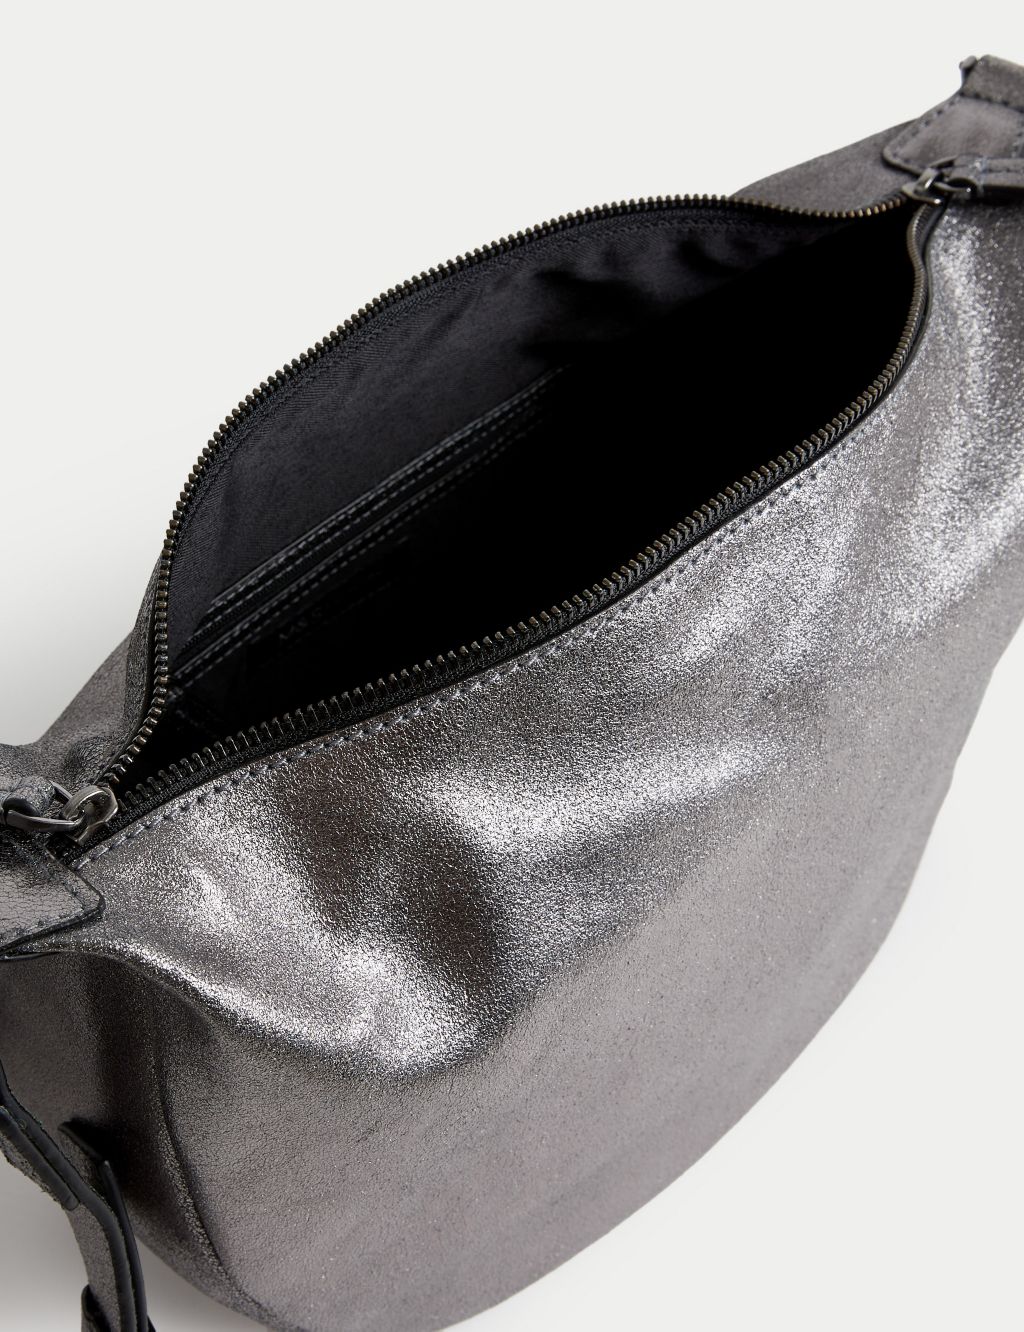 Leather Double Zip Cross Body Bag image 4